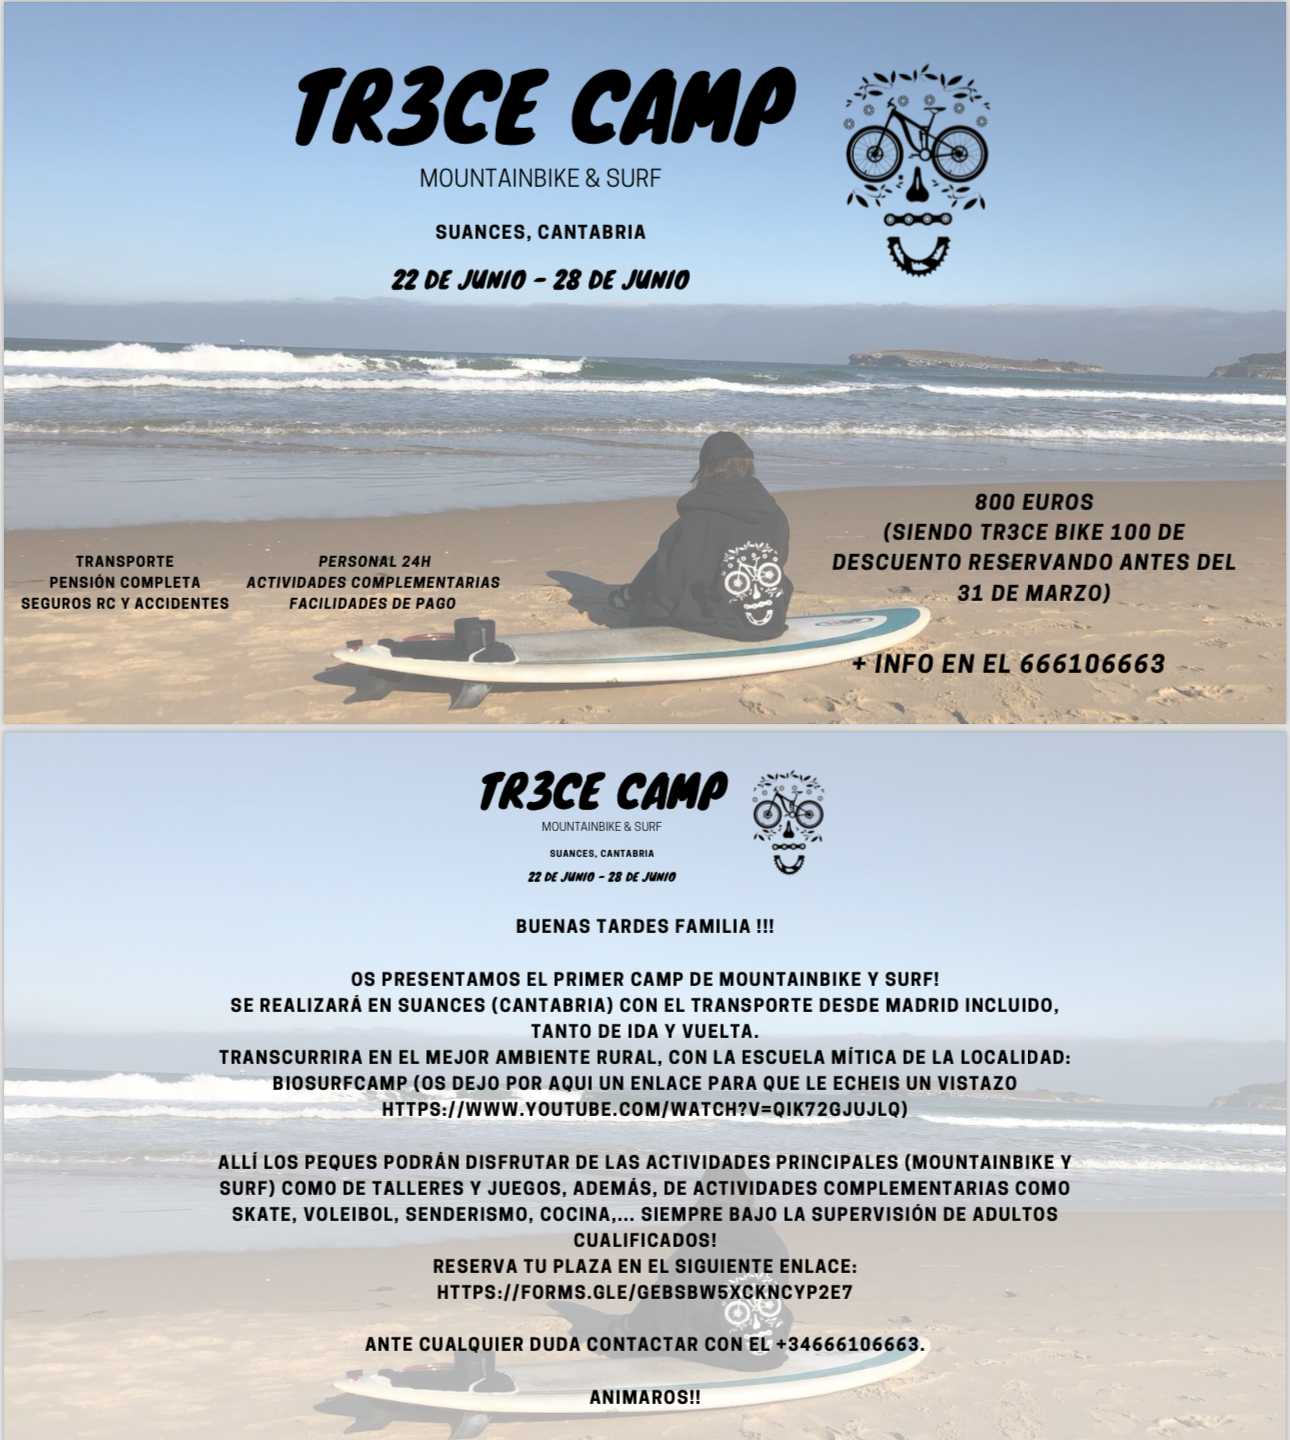 ¡Aventura en Suances! Campamento de Mountainbike y Surf con TR3CE BIKE